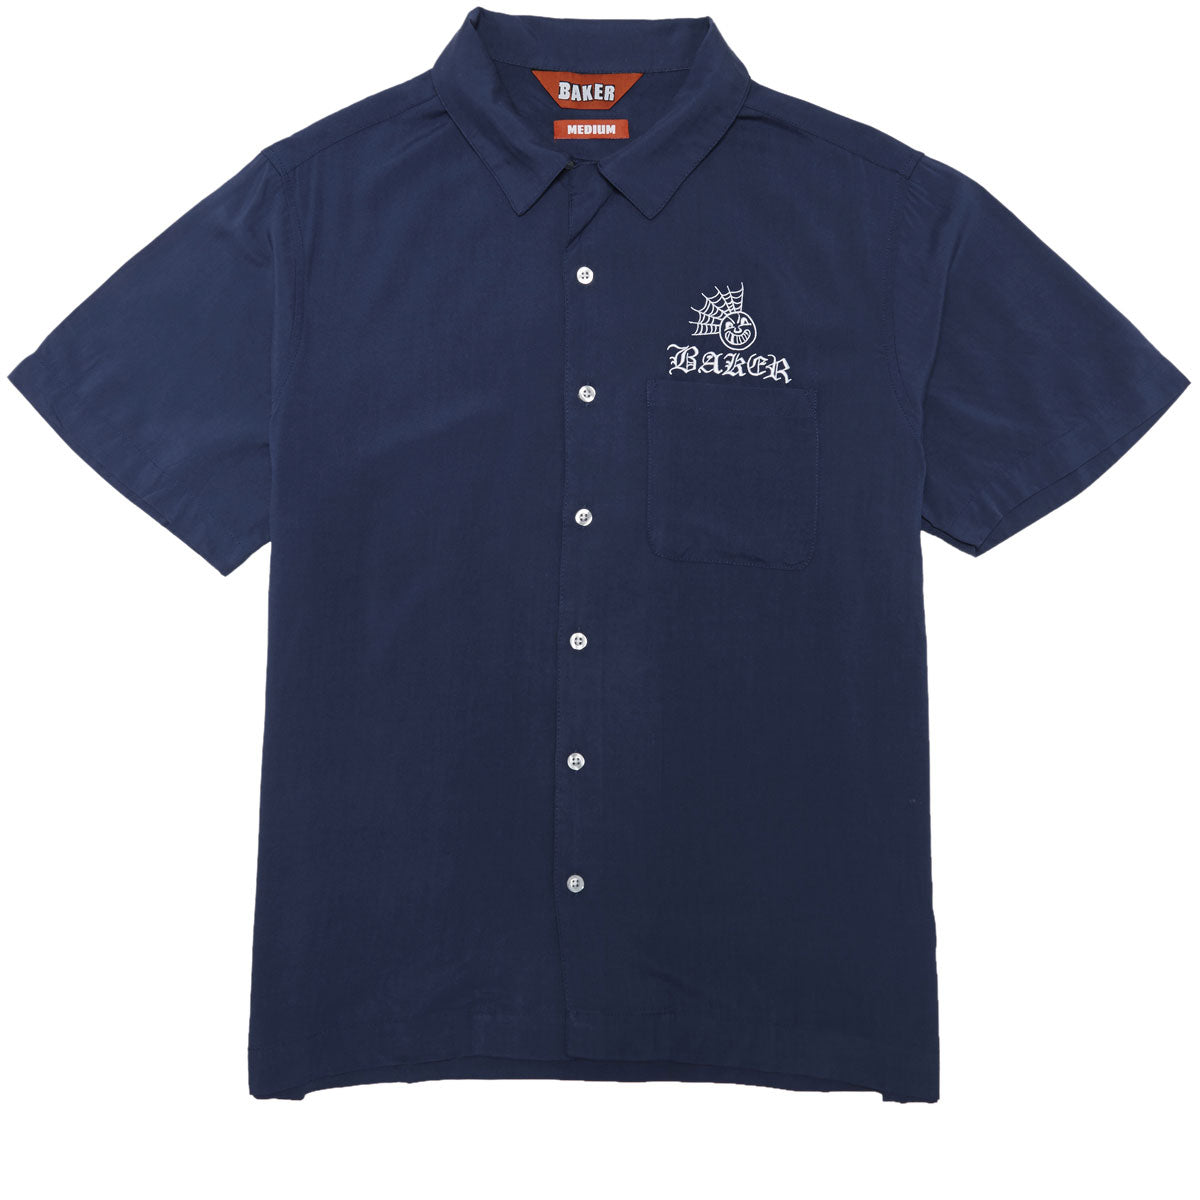 Baker Jollyman Button Up Shirt - Blue image 1